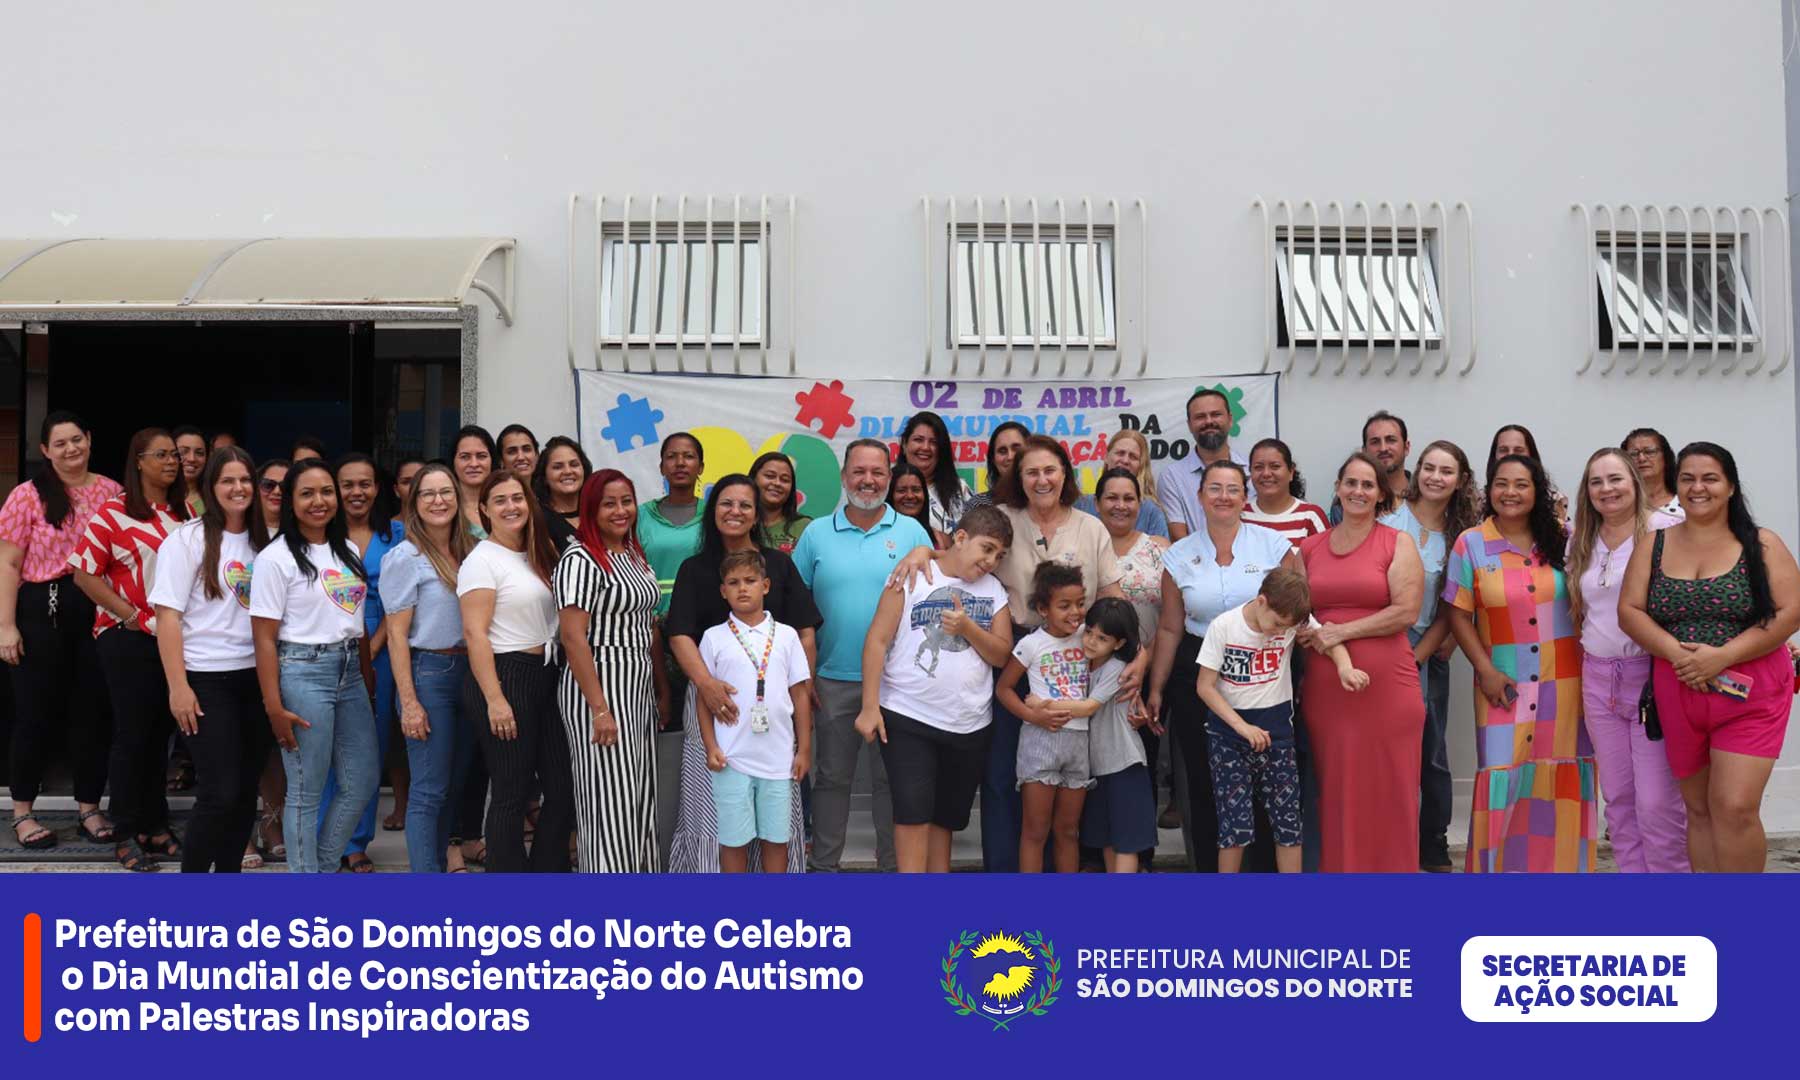 Prefeitura de São Domingos do Norte Celebra o Dia Mundial de Conscientização do Autismo com Palestras Inspiradoras